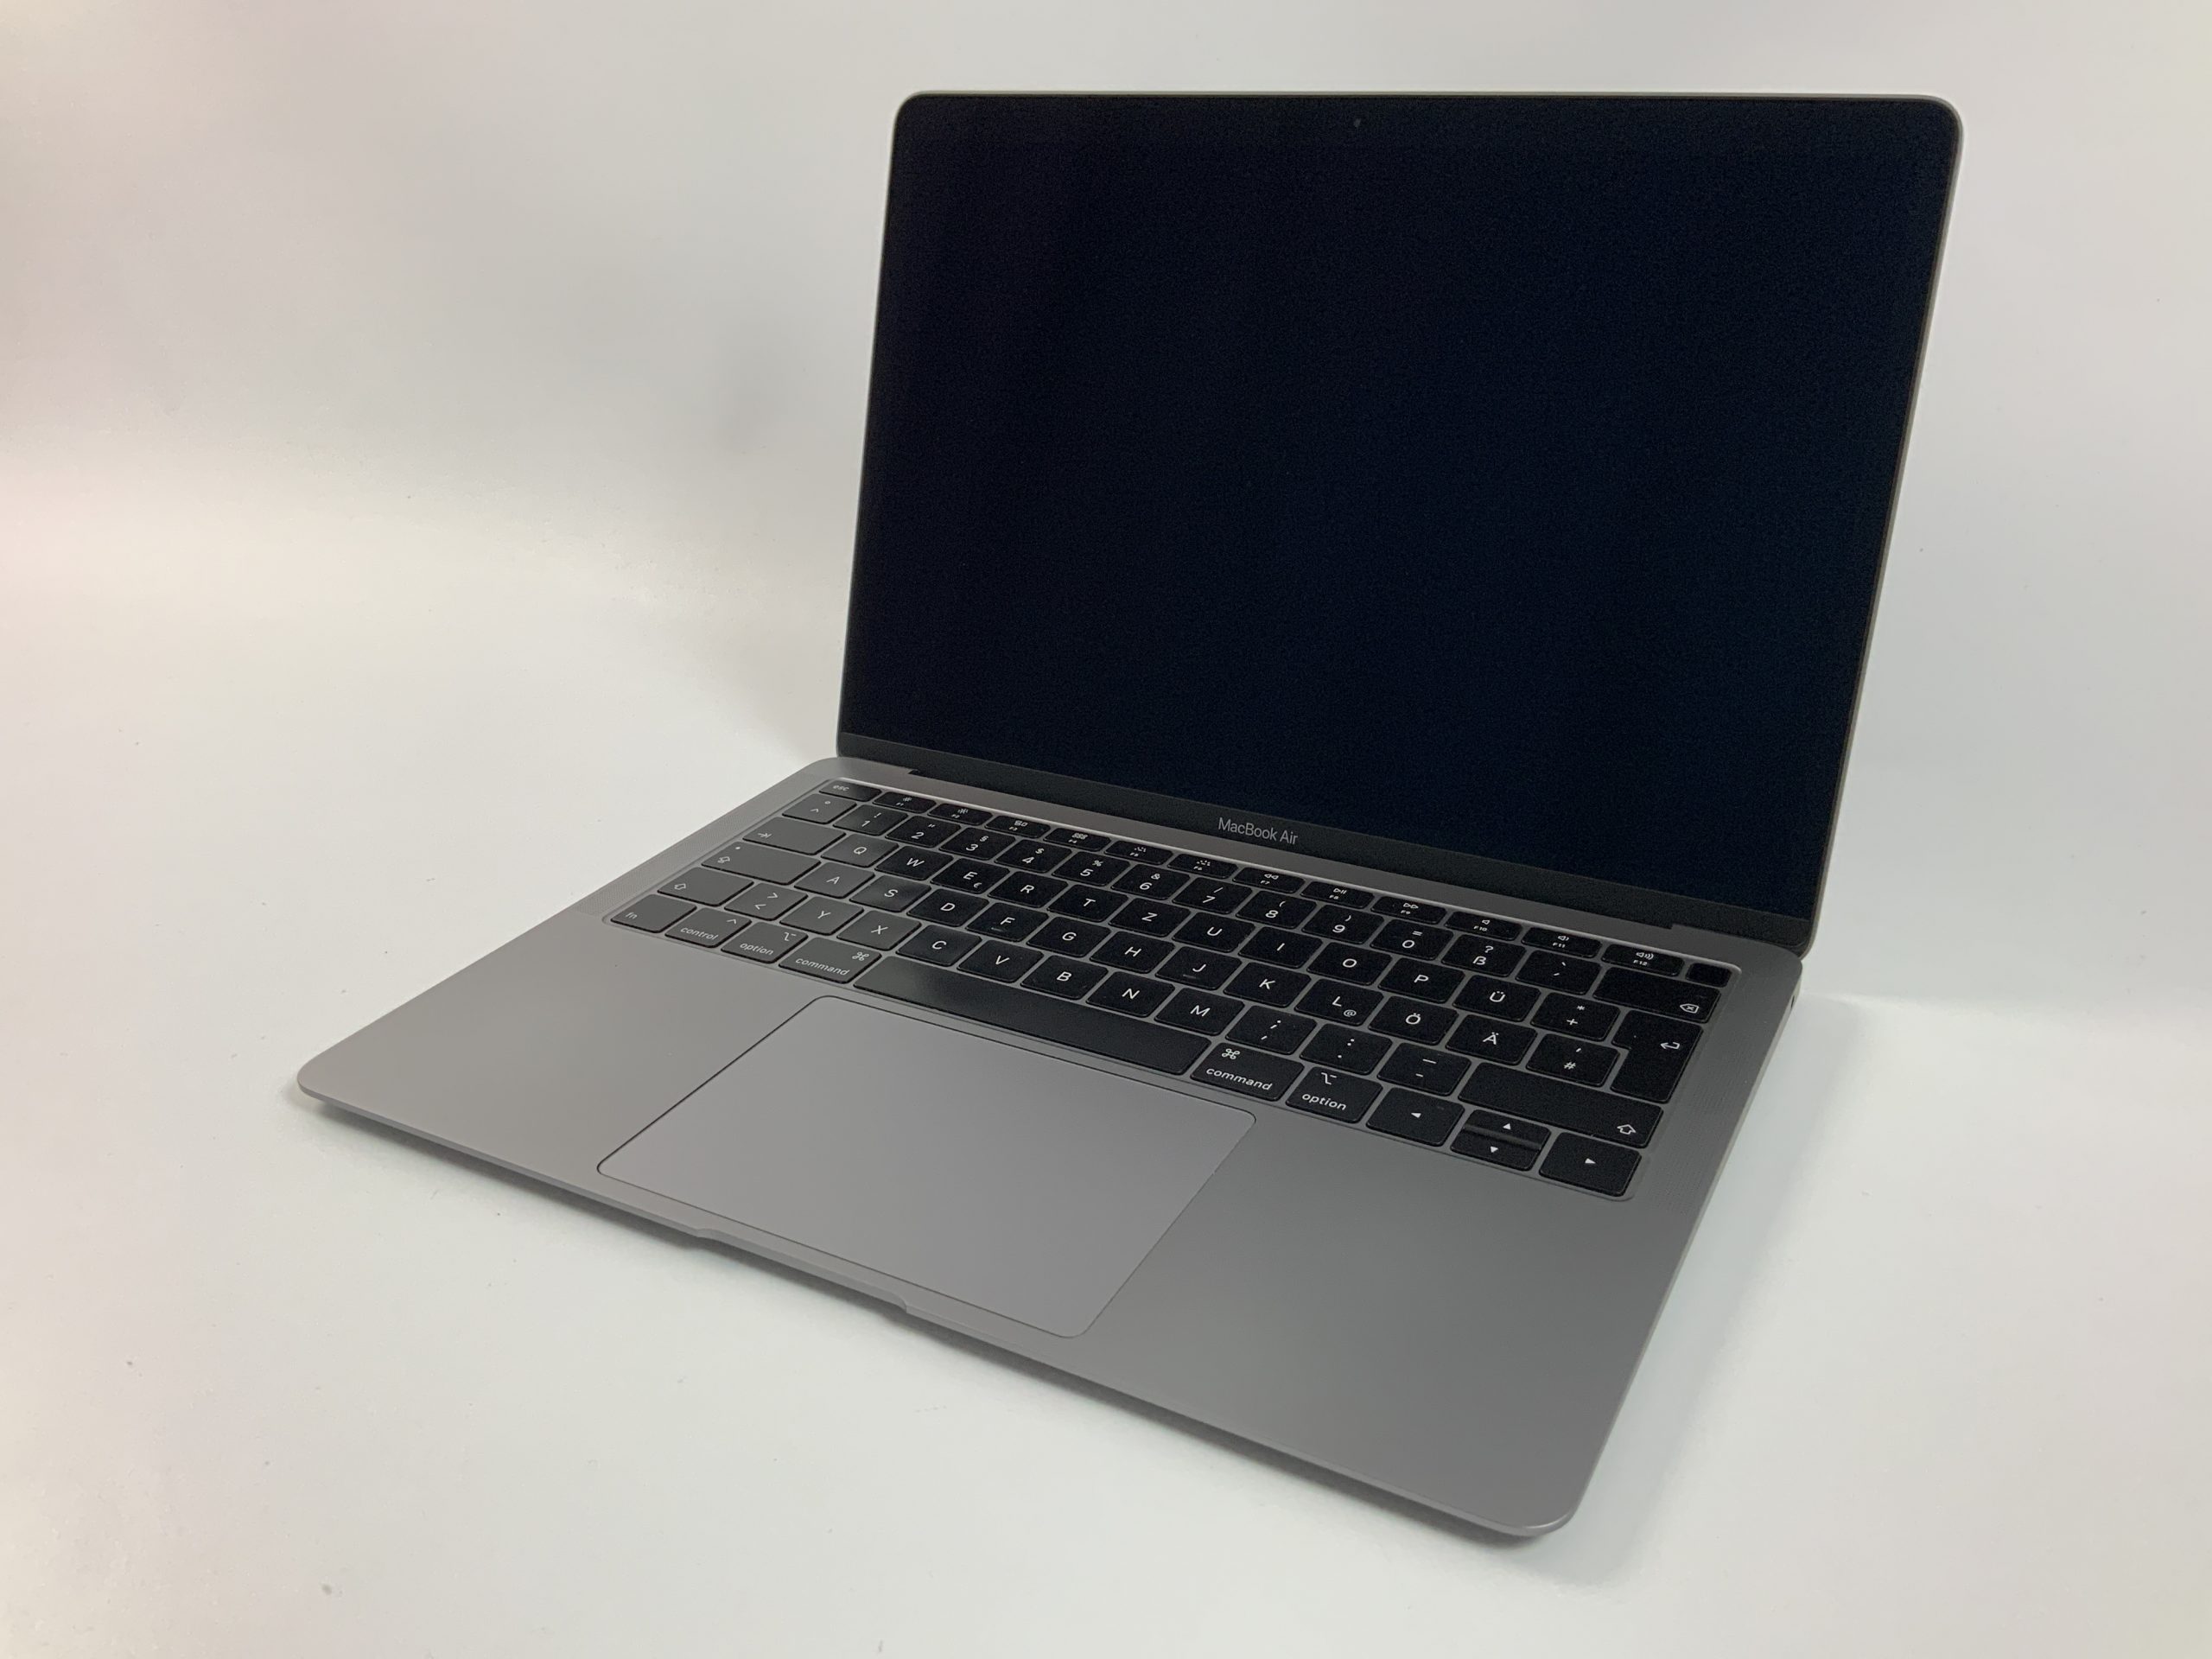 MacBook Air 13" Mid 2019 (Intel Core i5 1.6 GHz 8 GB RAM 512 GB SSD), Space Gray, Intel Core i5 1.6 GHz, 8 GB RAM, 512 GB SSD, Bild 1